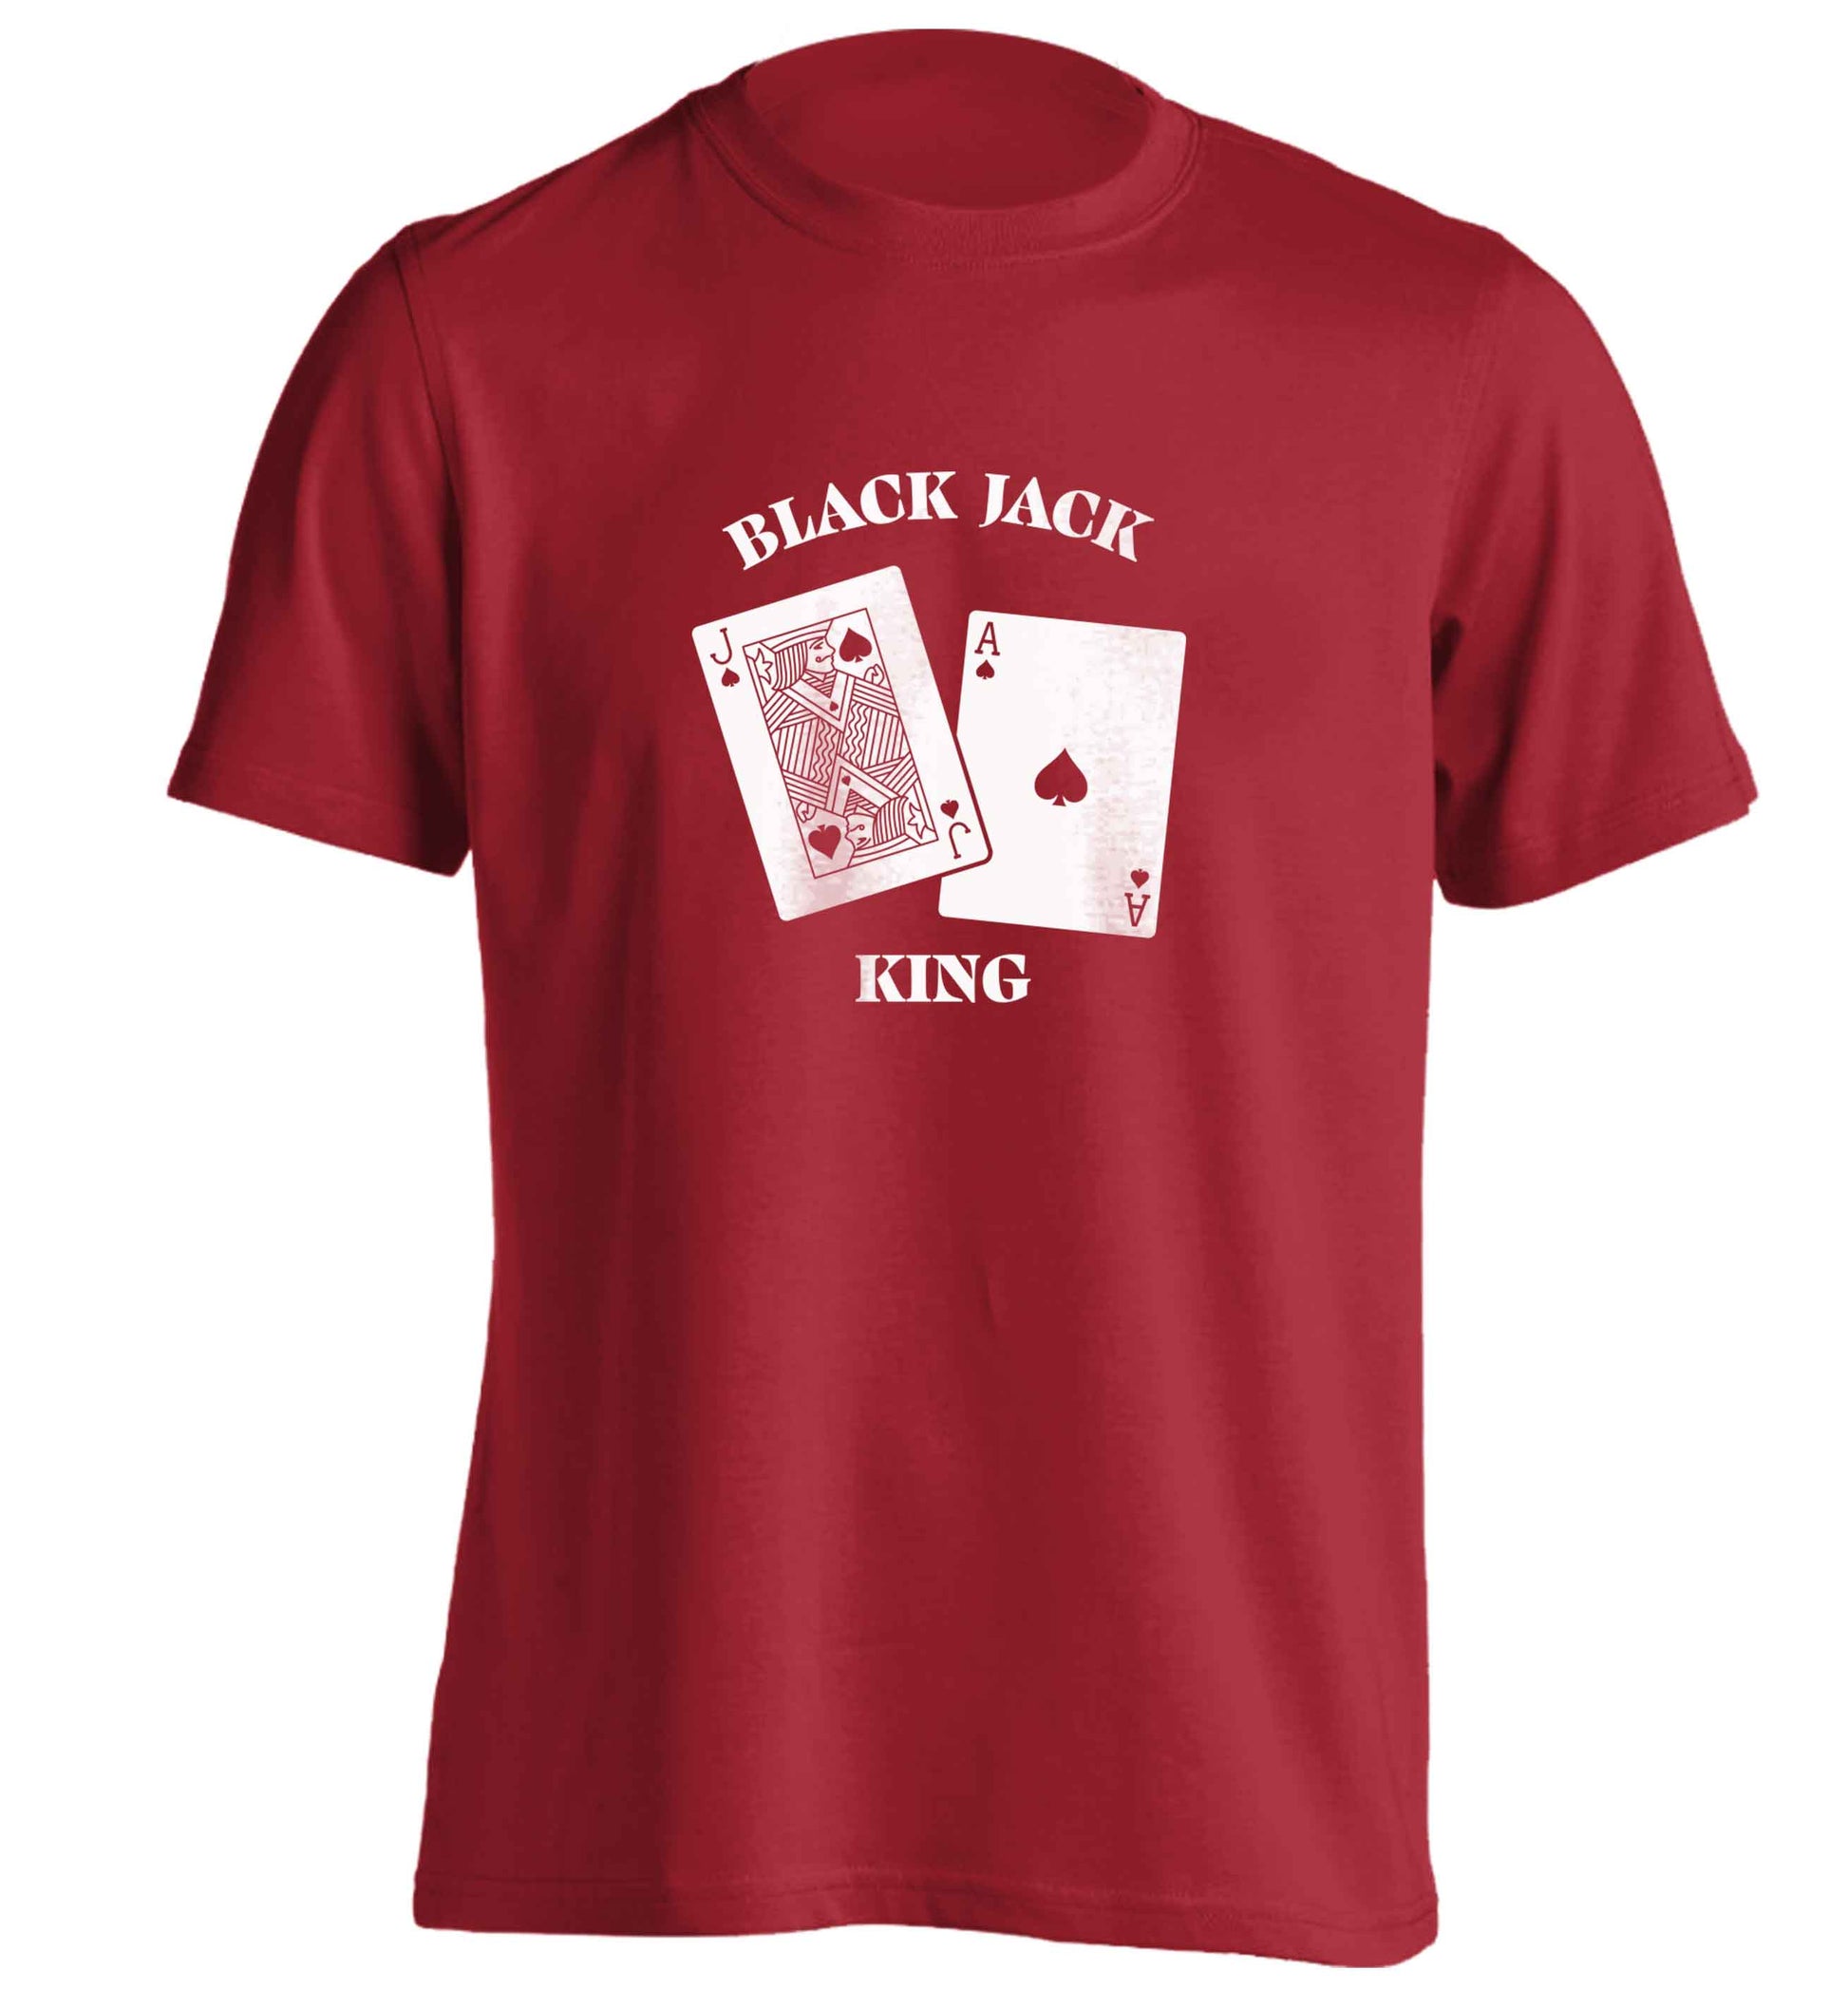 Blackjack king adults unisex red Tshirt 2XL